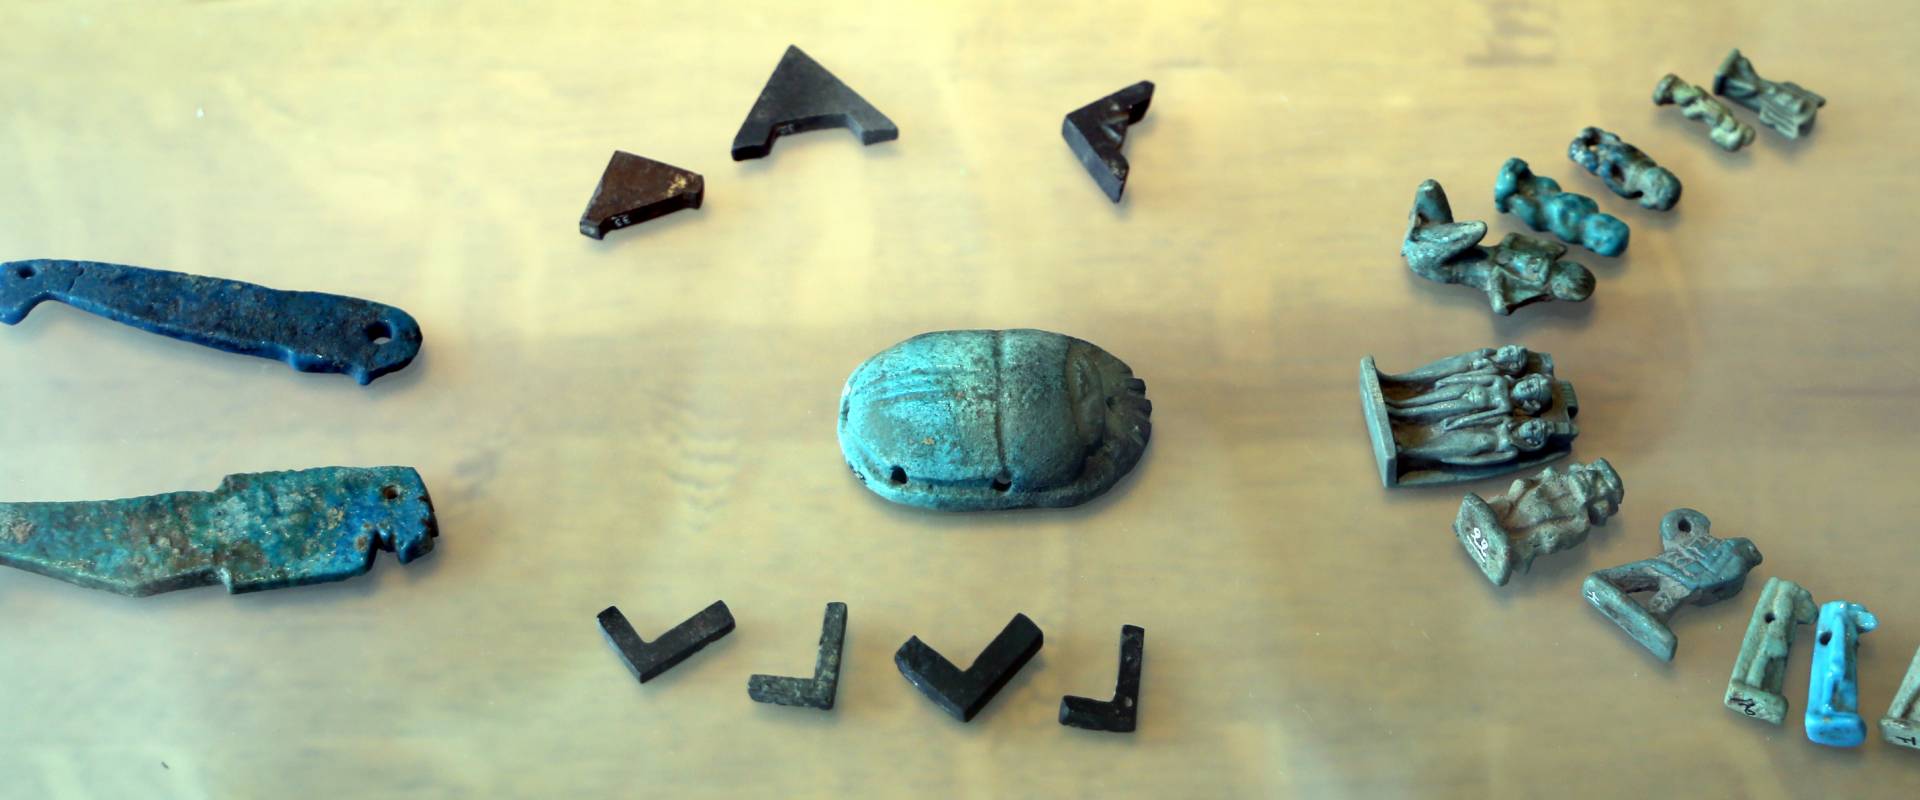 Epoca tolemaica, amuleti in faience, statuette e scarabeo foto di Sailko